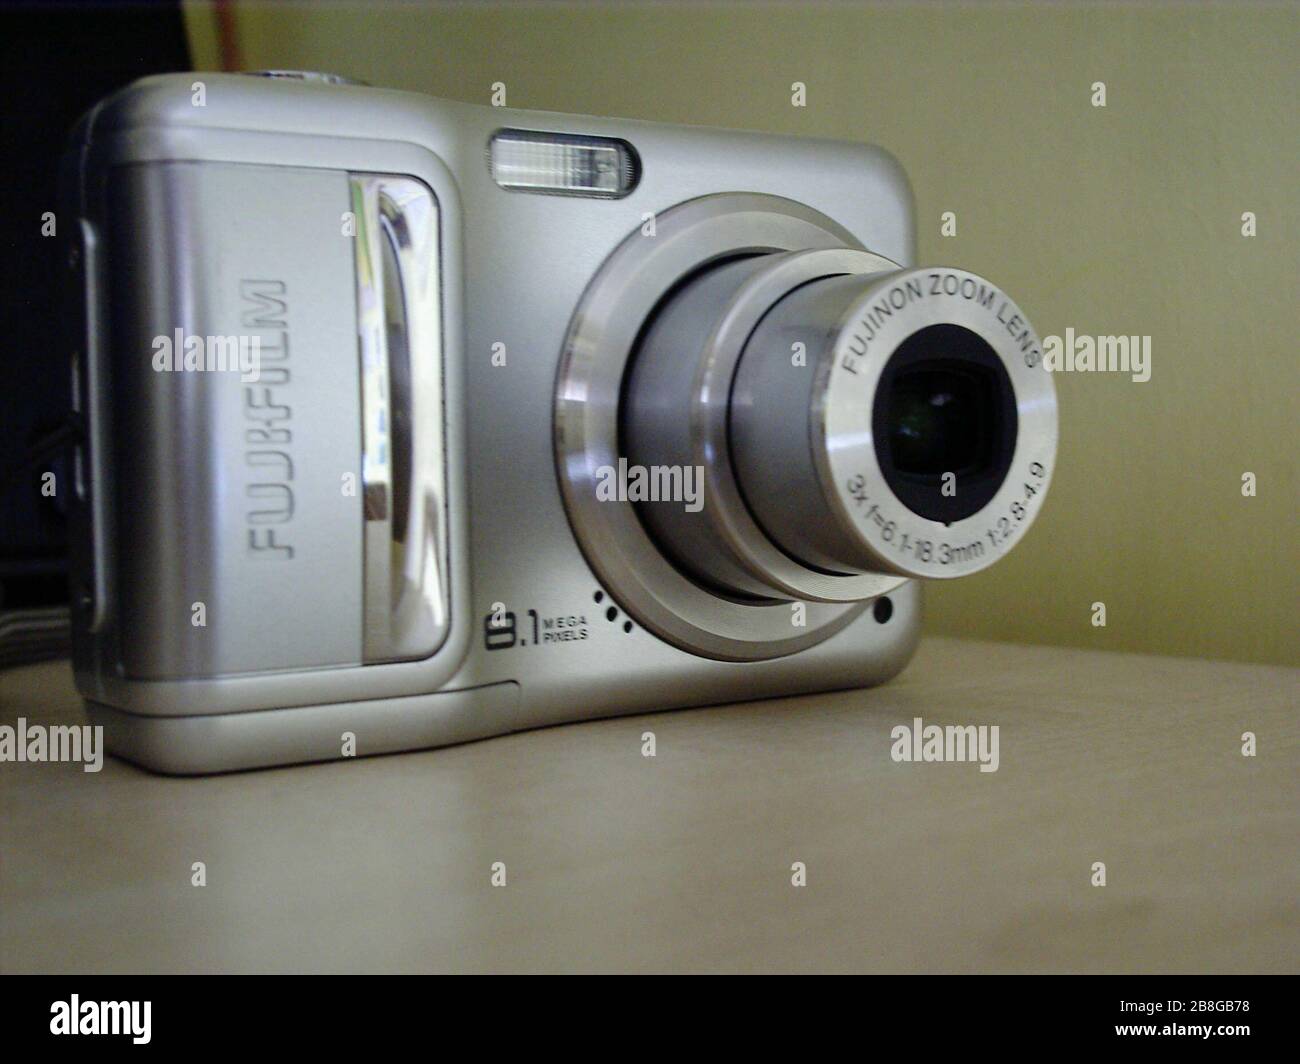 L'inglese: Fujifilm A850 Fotocamera; 23 luglio 2010 (originale data di  caricamento); trasferiti da en.wikipedia Commons by Liftarn utilizzando  CommonsHelper.; Pcwiz11 a Wikipedia in inglese; ' Foto stock - Alamy